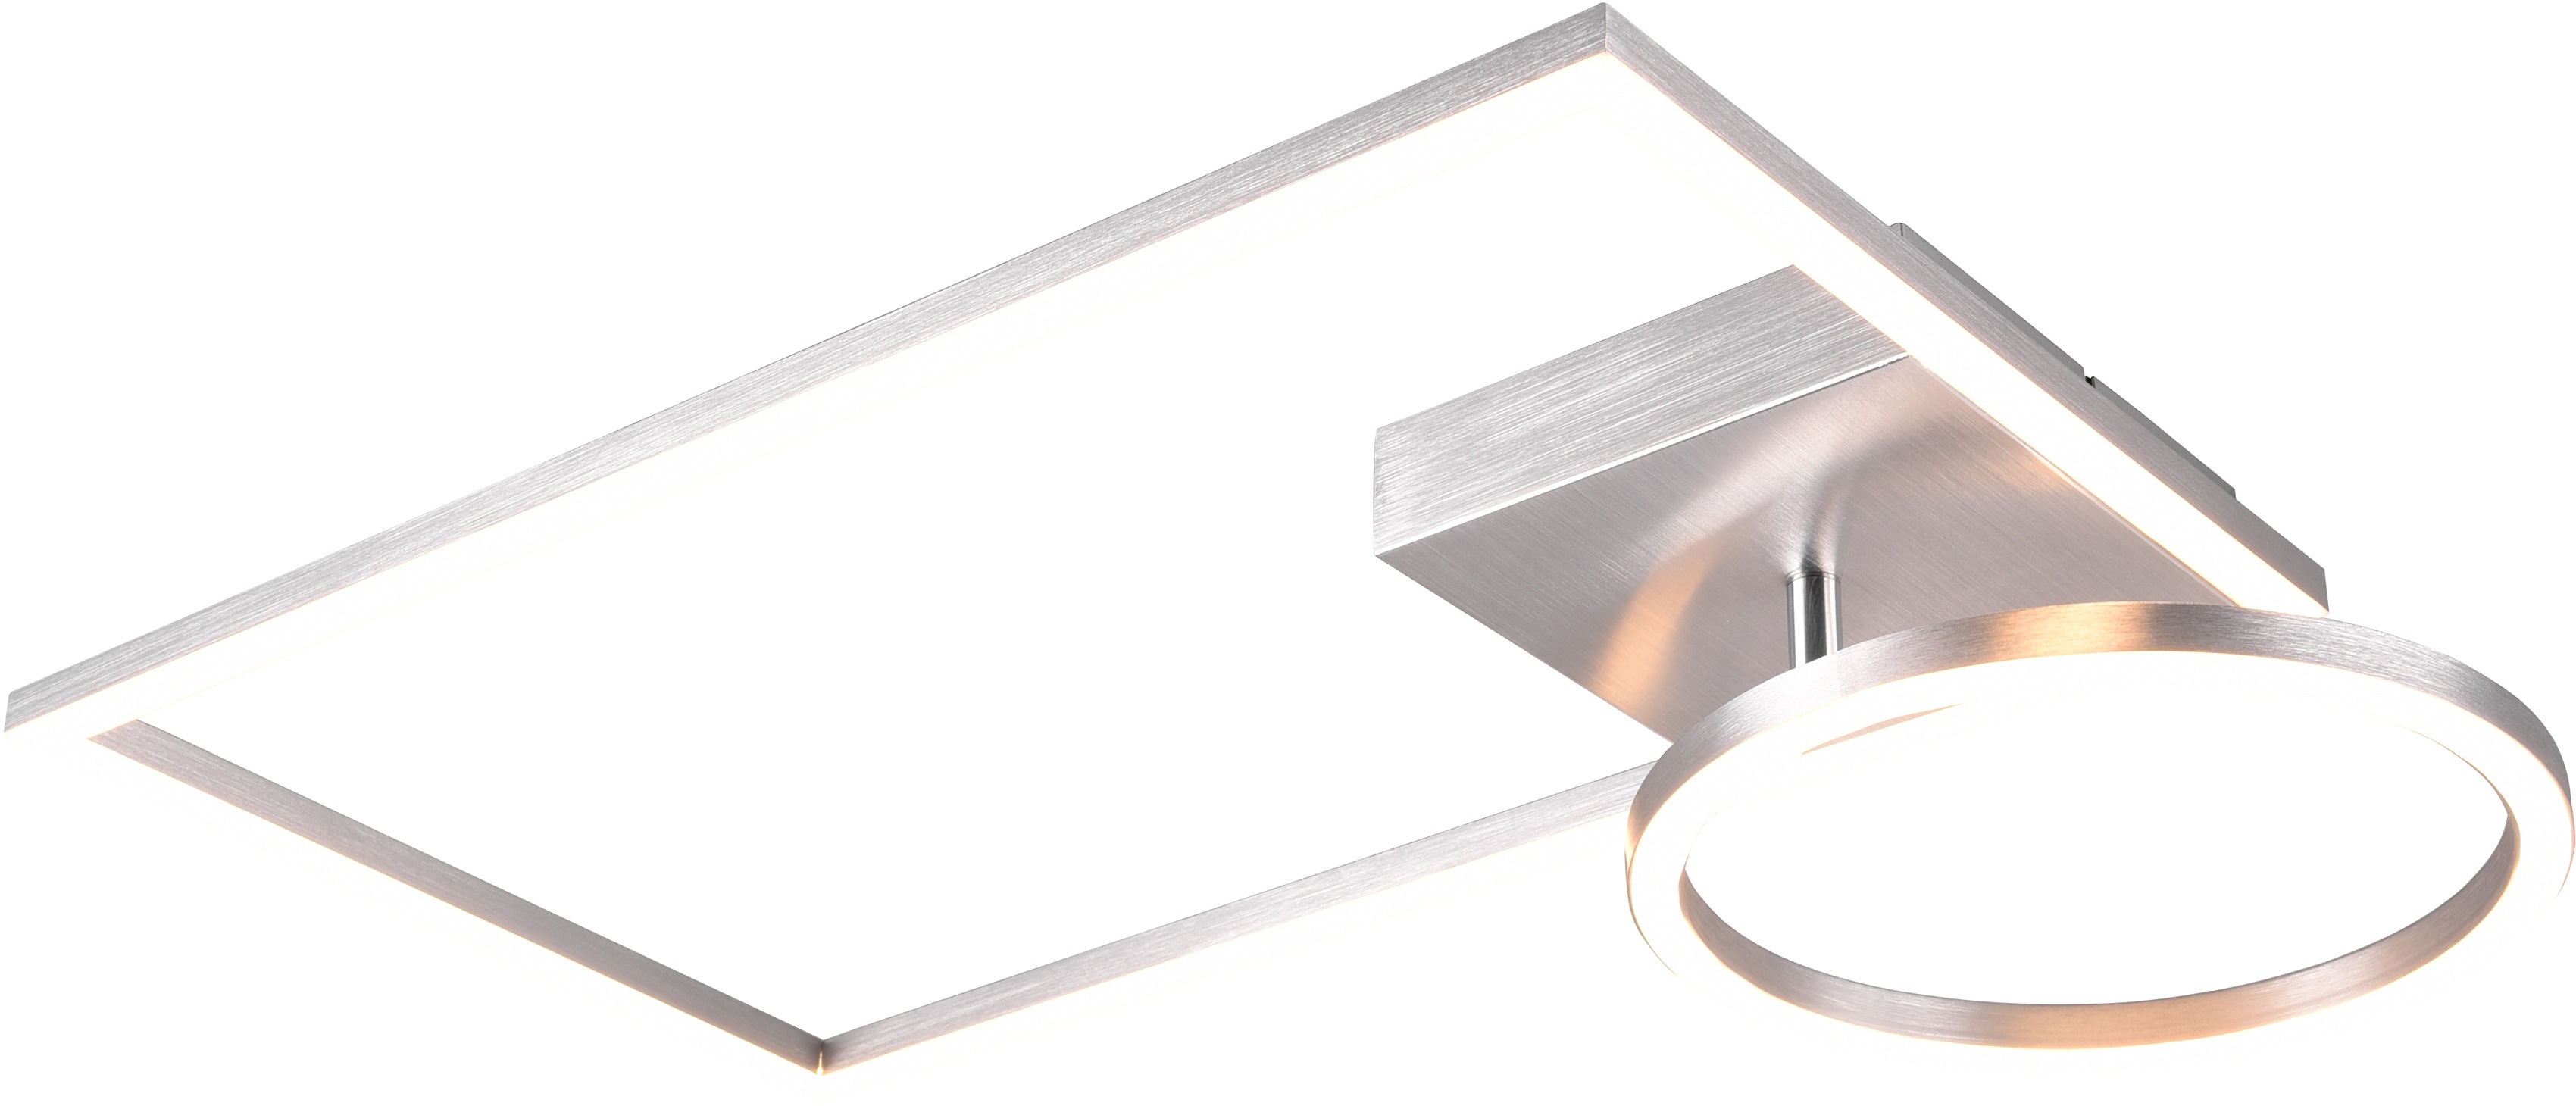 TRIO Leuchten LED Deckenleuchte VERSO, LED Deckenlampe mit Switch Dimmer, LED-Modul, 1 St., Warmweiß, über Wandschalter dimmbar, Ring schwenkbar, 3000K, 3000 Lm, 30x50 cm